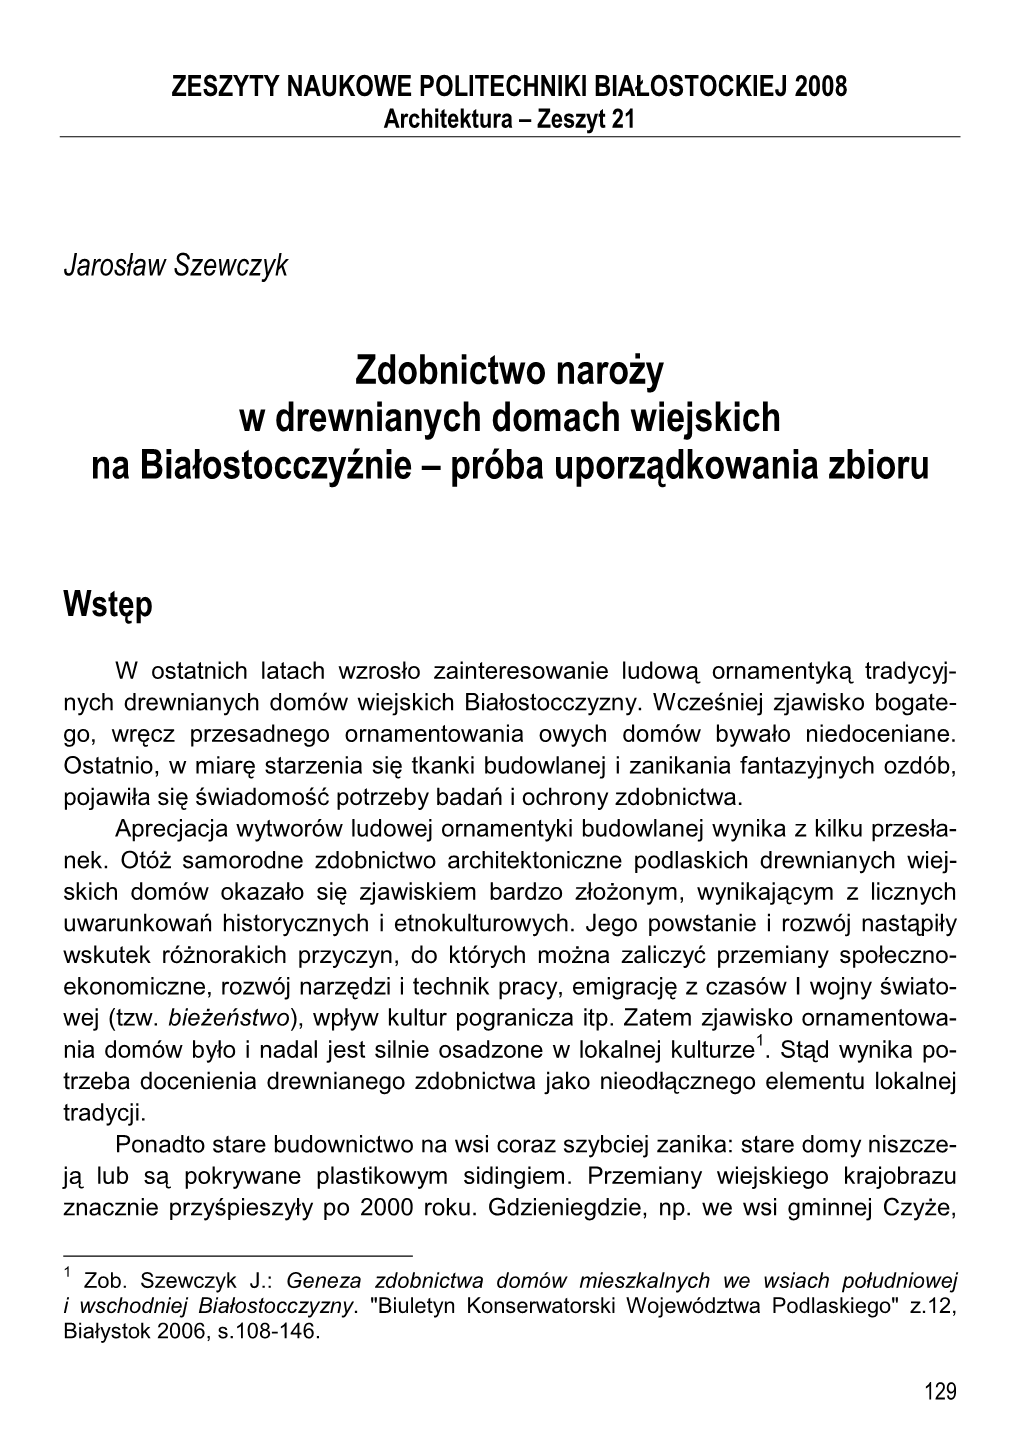 ZN21 8. J.Szewczyk